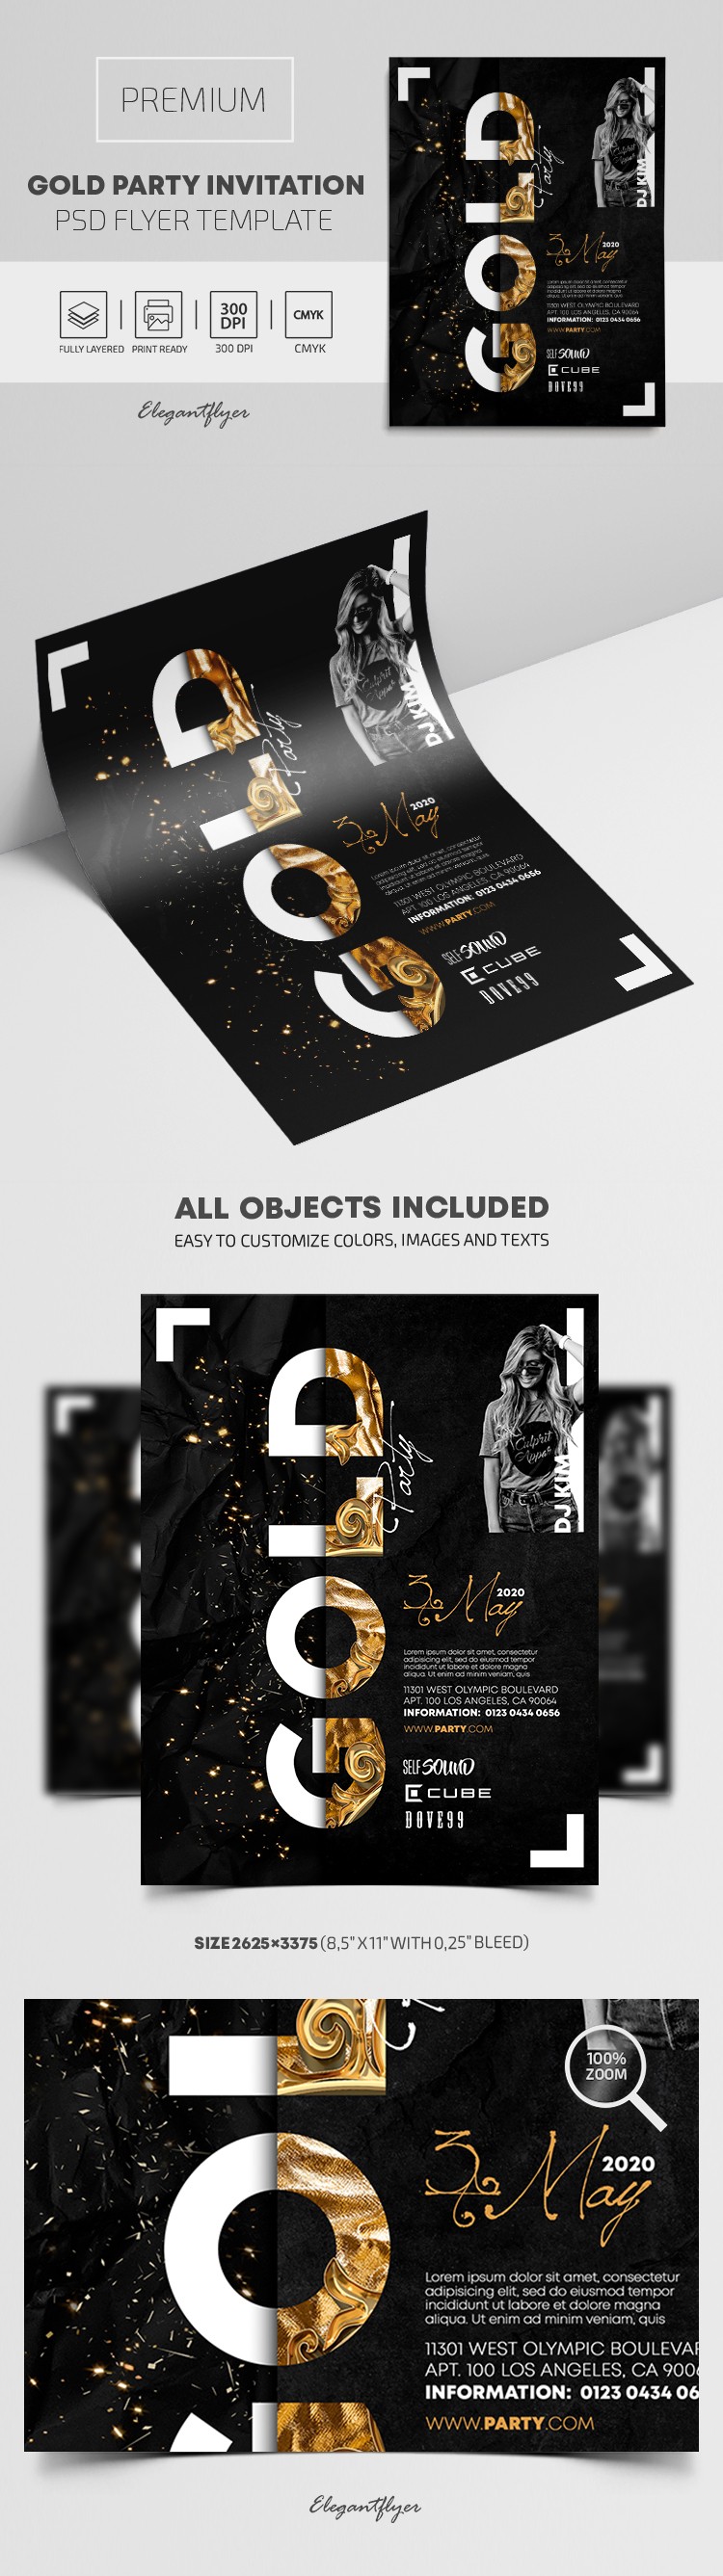 Gold Party Invitation Flyer by ElegantFlyer